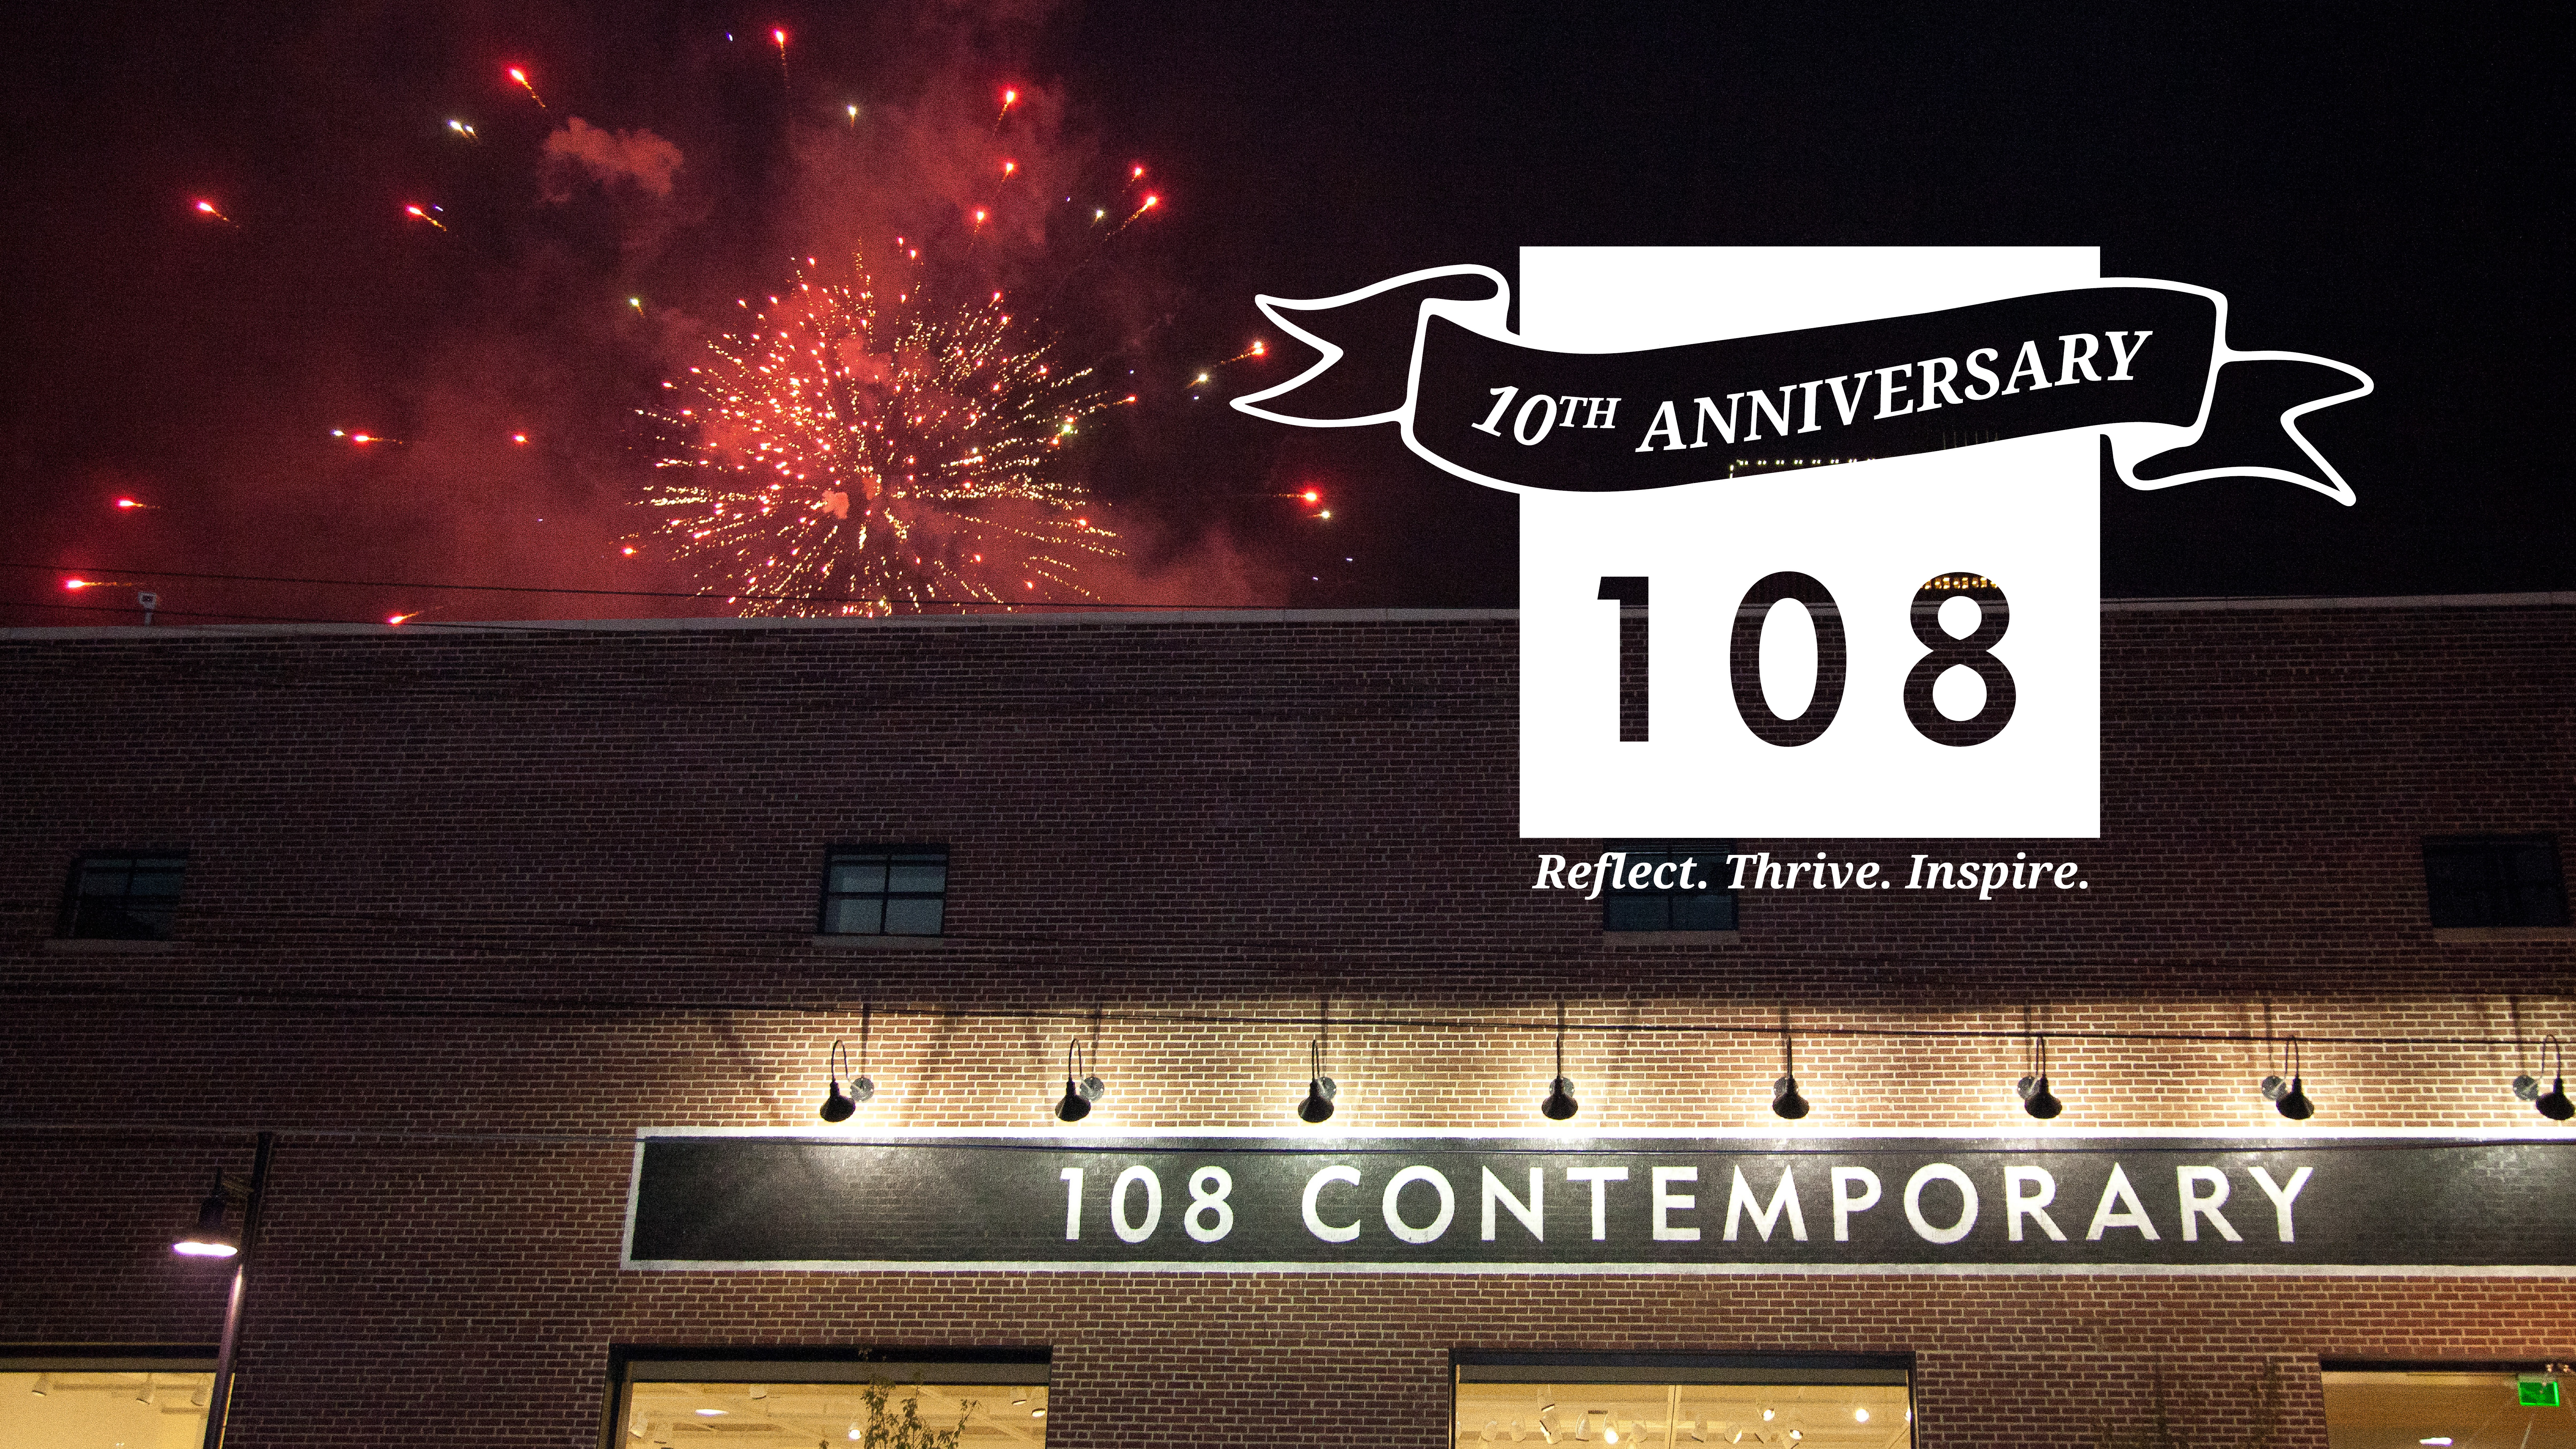 10th Anniversary at 108